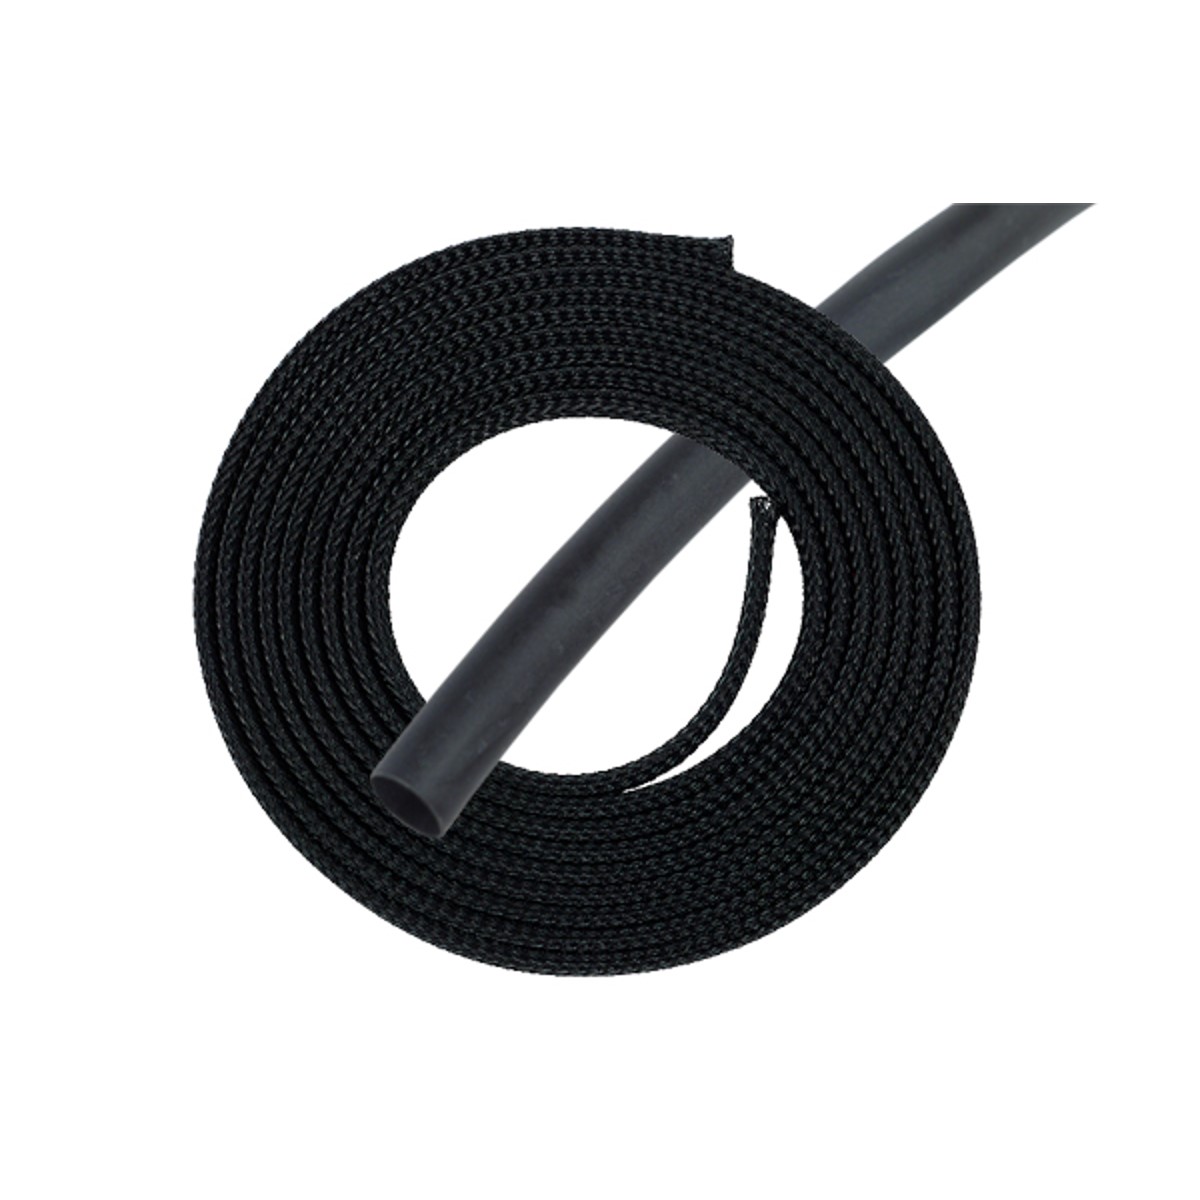 Phobya Simple Sleeve Kit 13mm (1/2") with Heat Shrink, 2 meter, Black - image 1 of 3